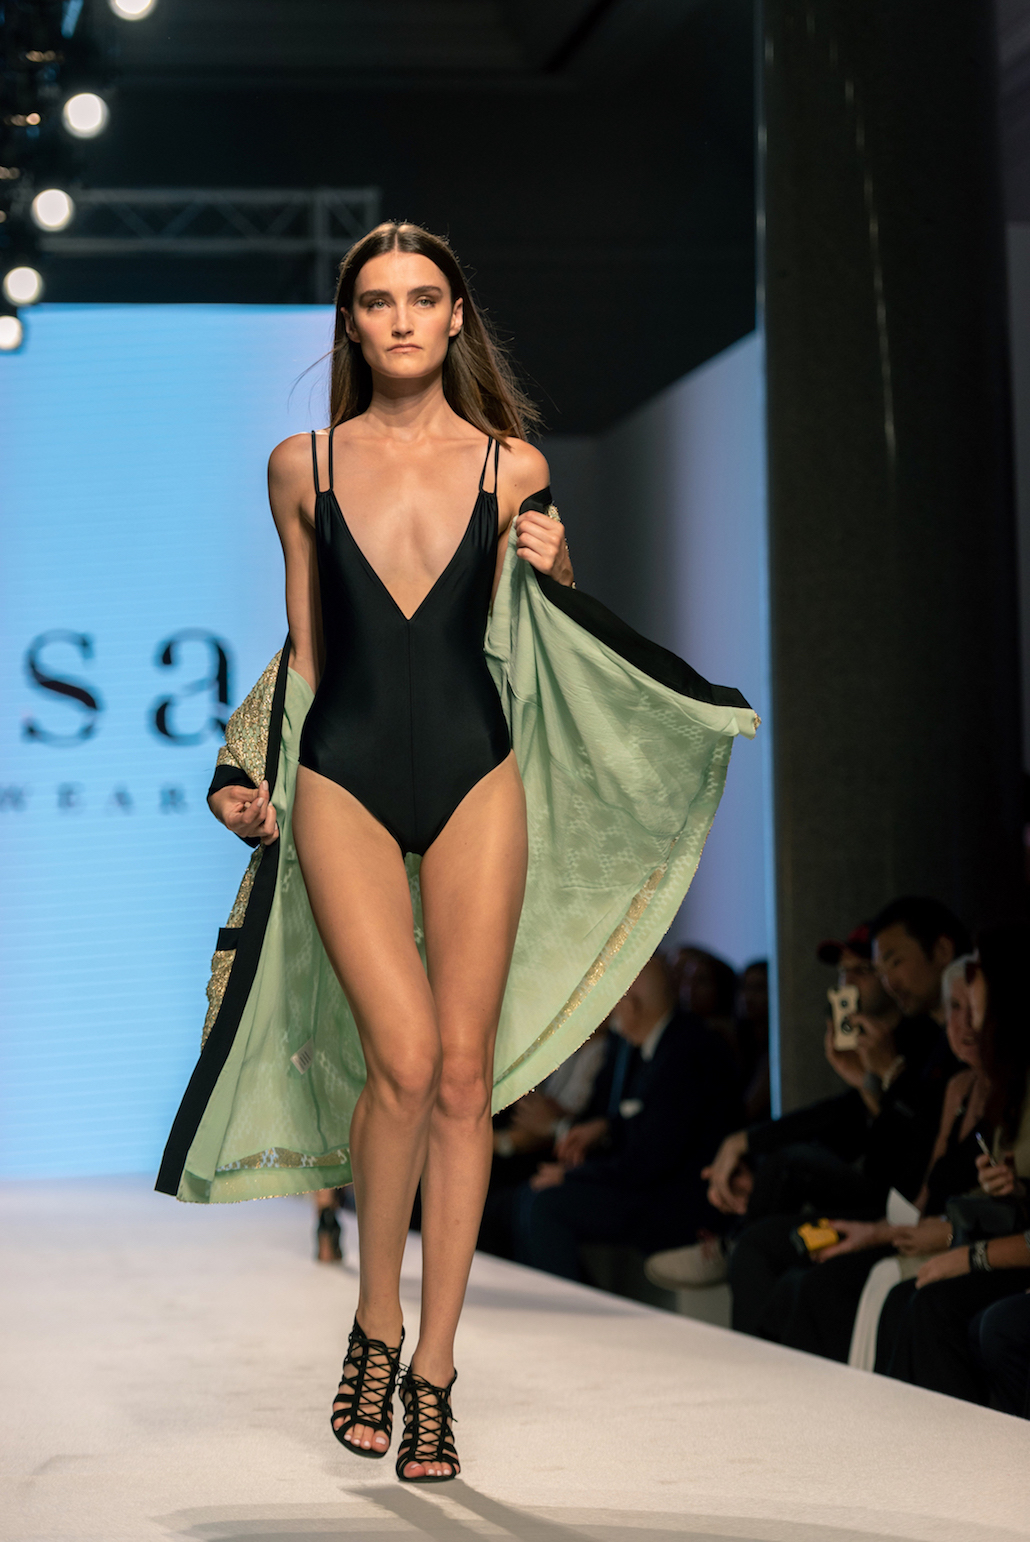 Intesa San Paolo porta la moda in filiale con Next Trend